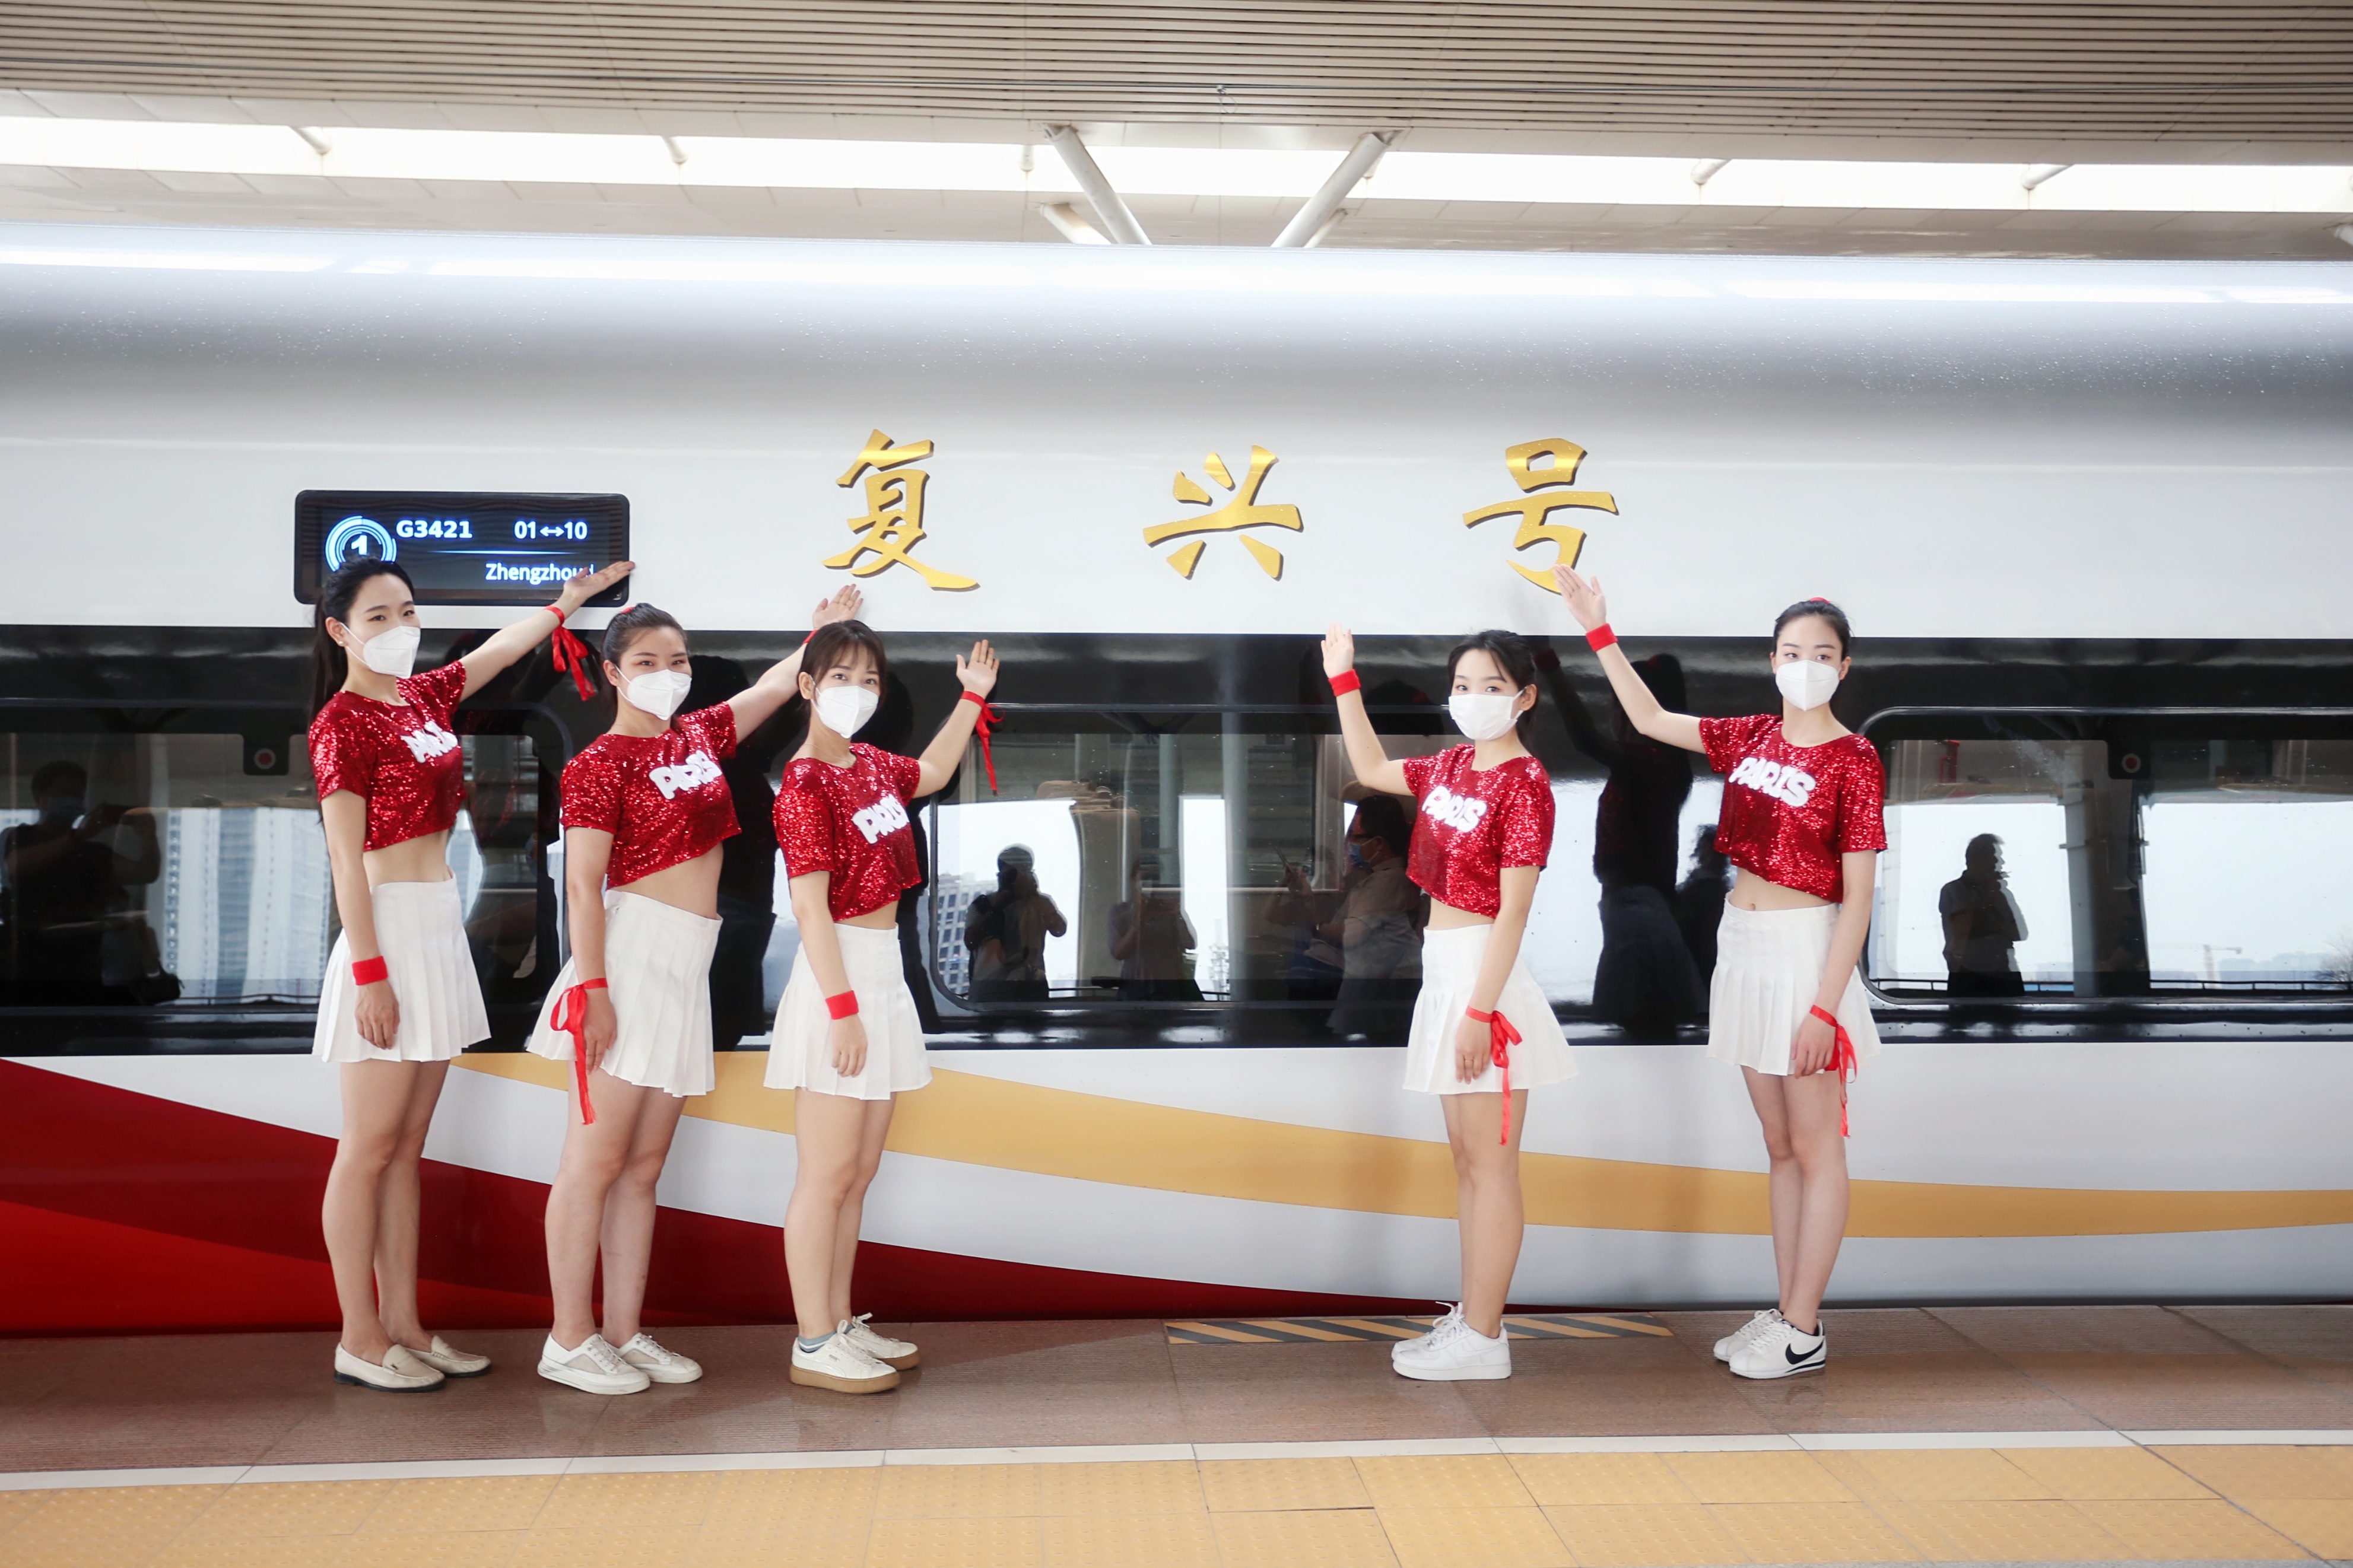 鄭州鐵路新添智能高鐵讓旅客體驗智能旅途